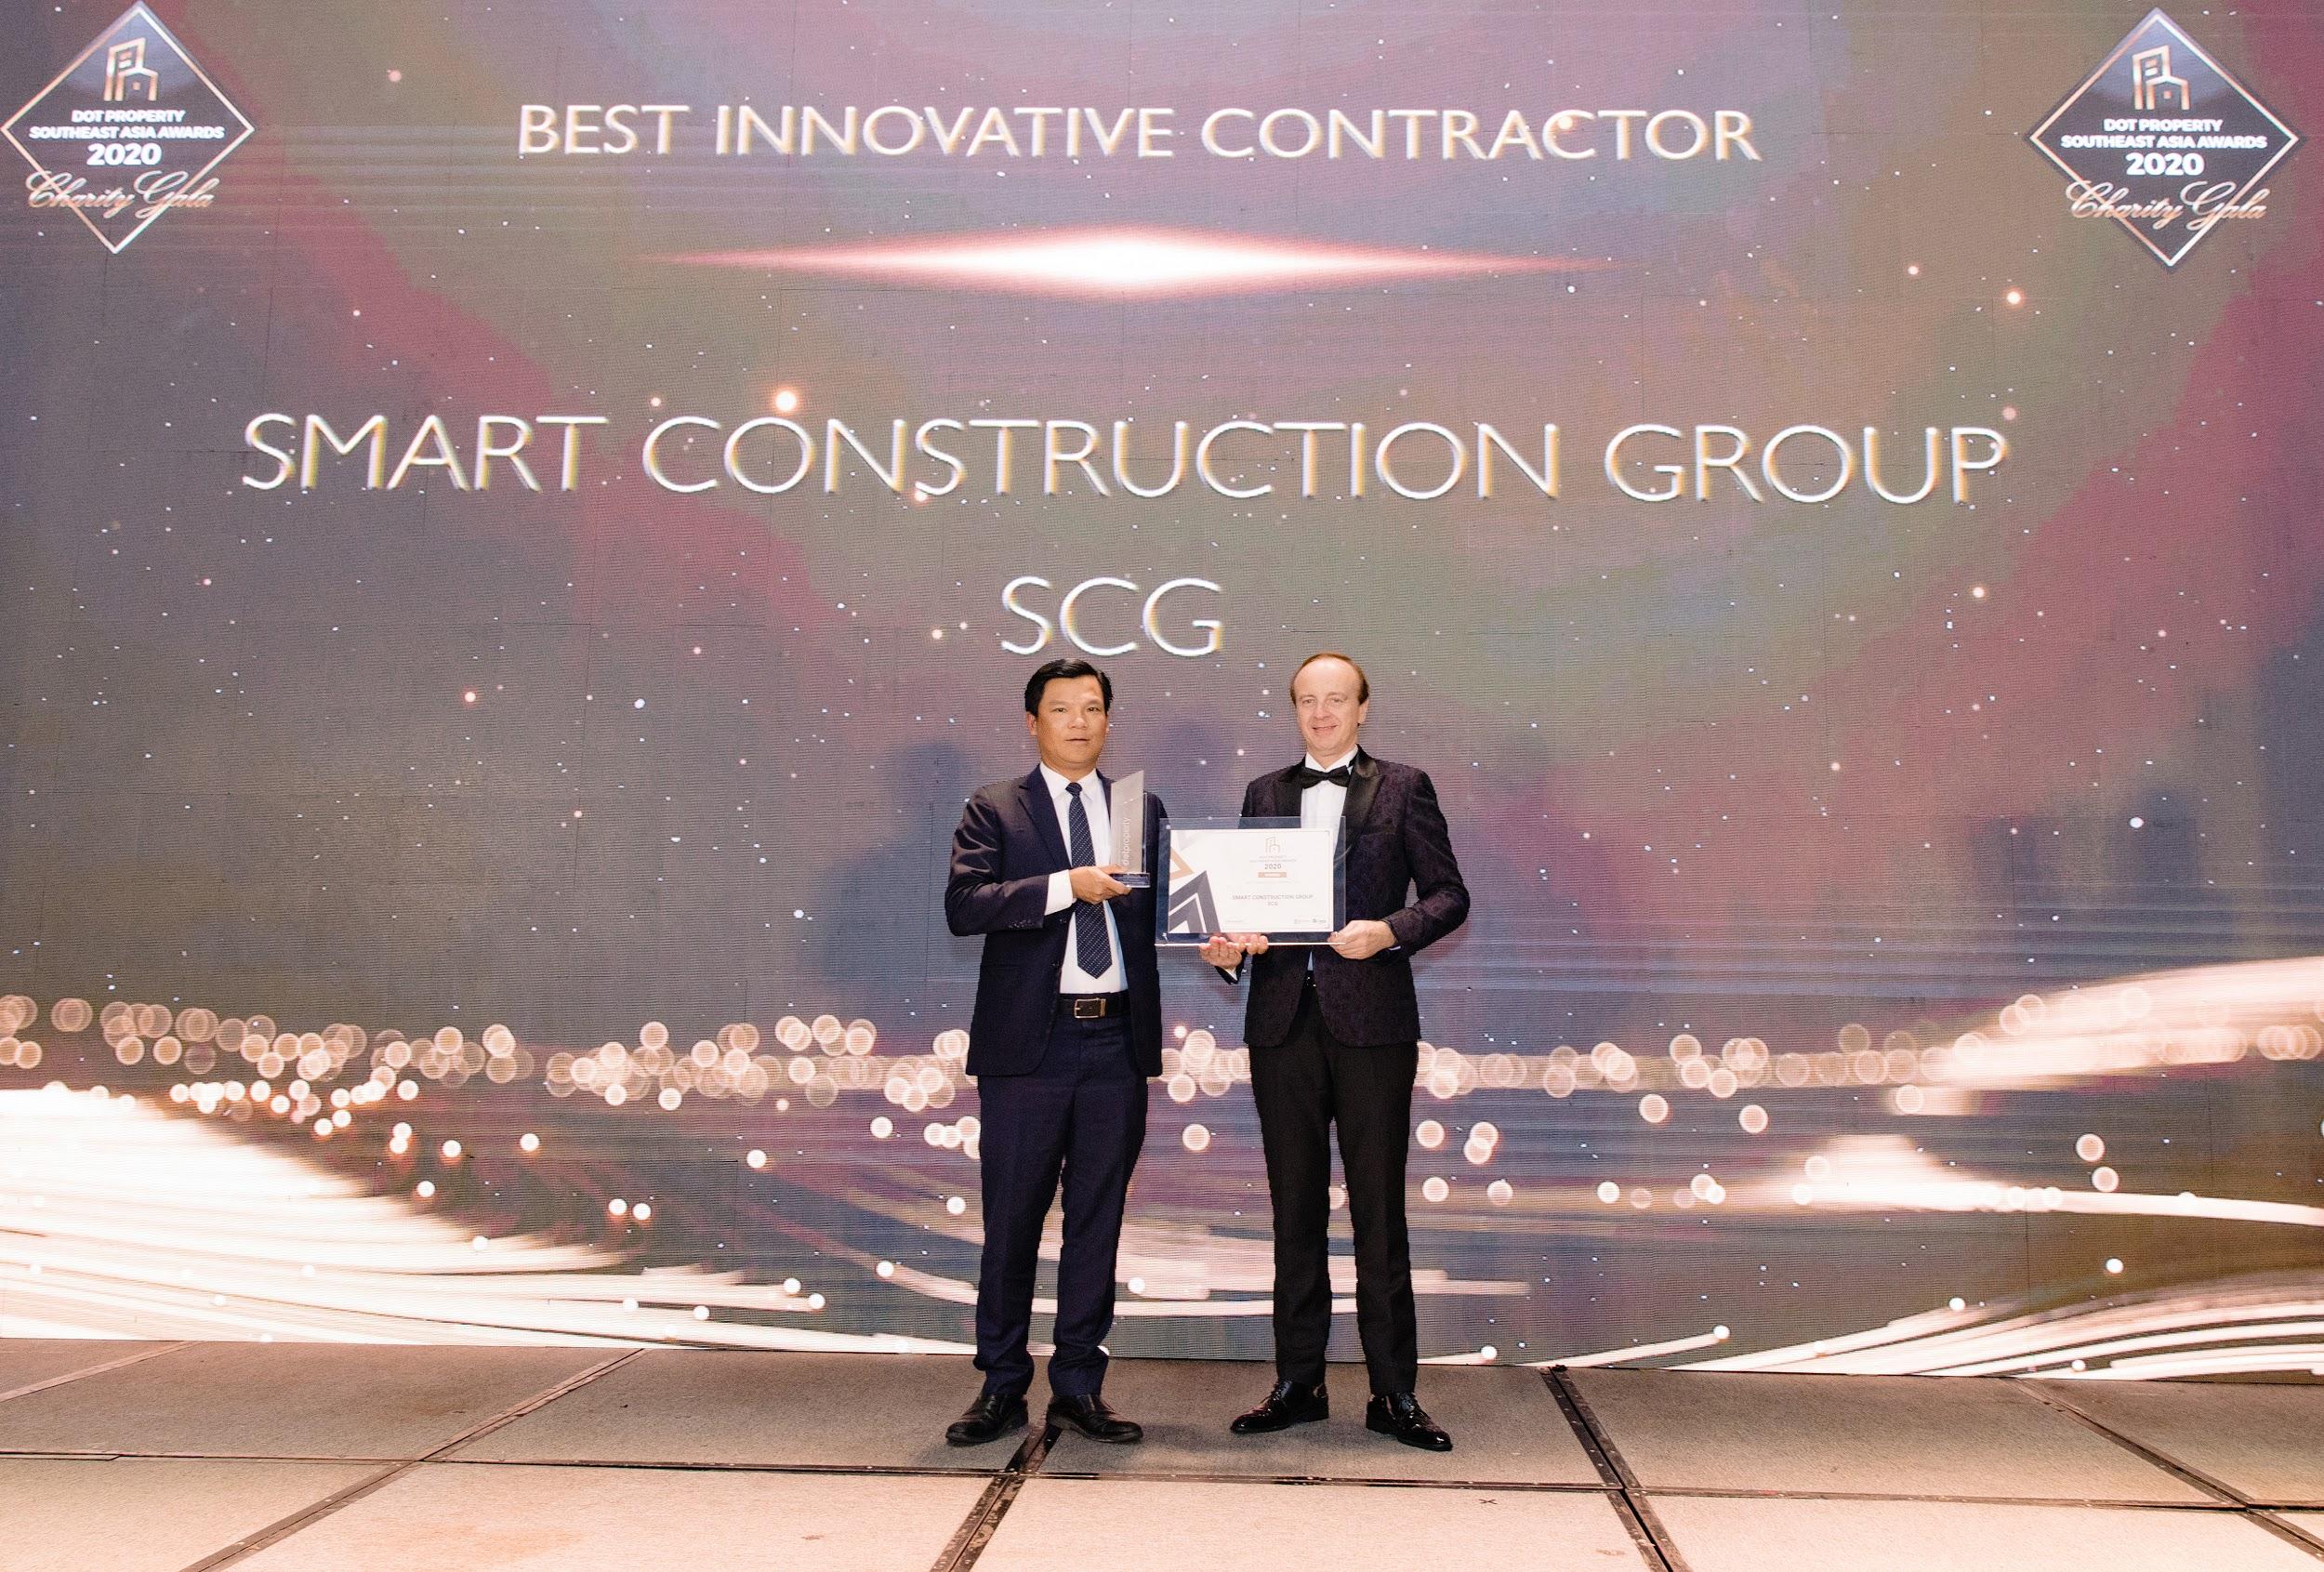 Công ty Cổ phần xây dựng SCG (Smart Construction Group) nhận giải thưởng Best Innovative Contractor Southeast Asia 2020 - Nhà thầu xây dựng đột phá nhất Đông Nam Á 2020